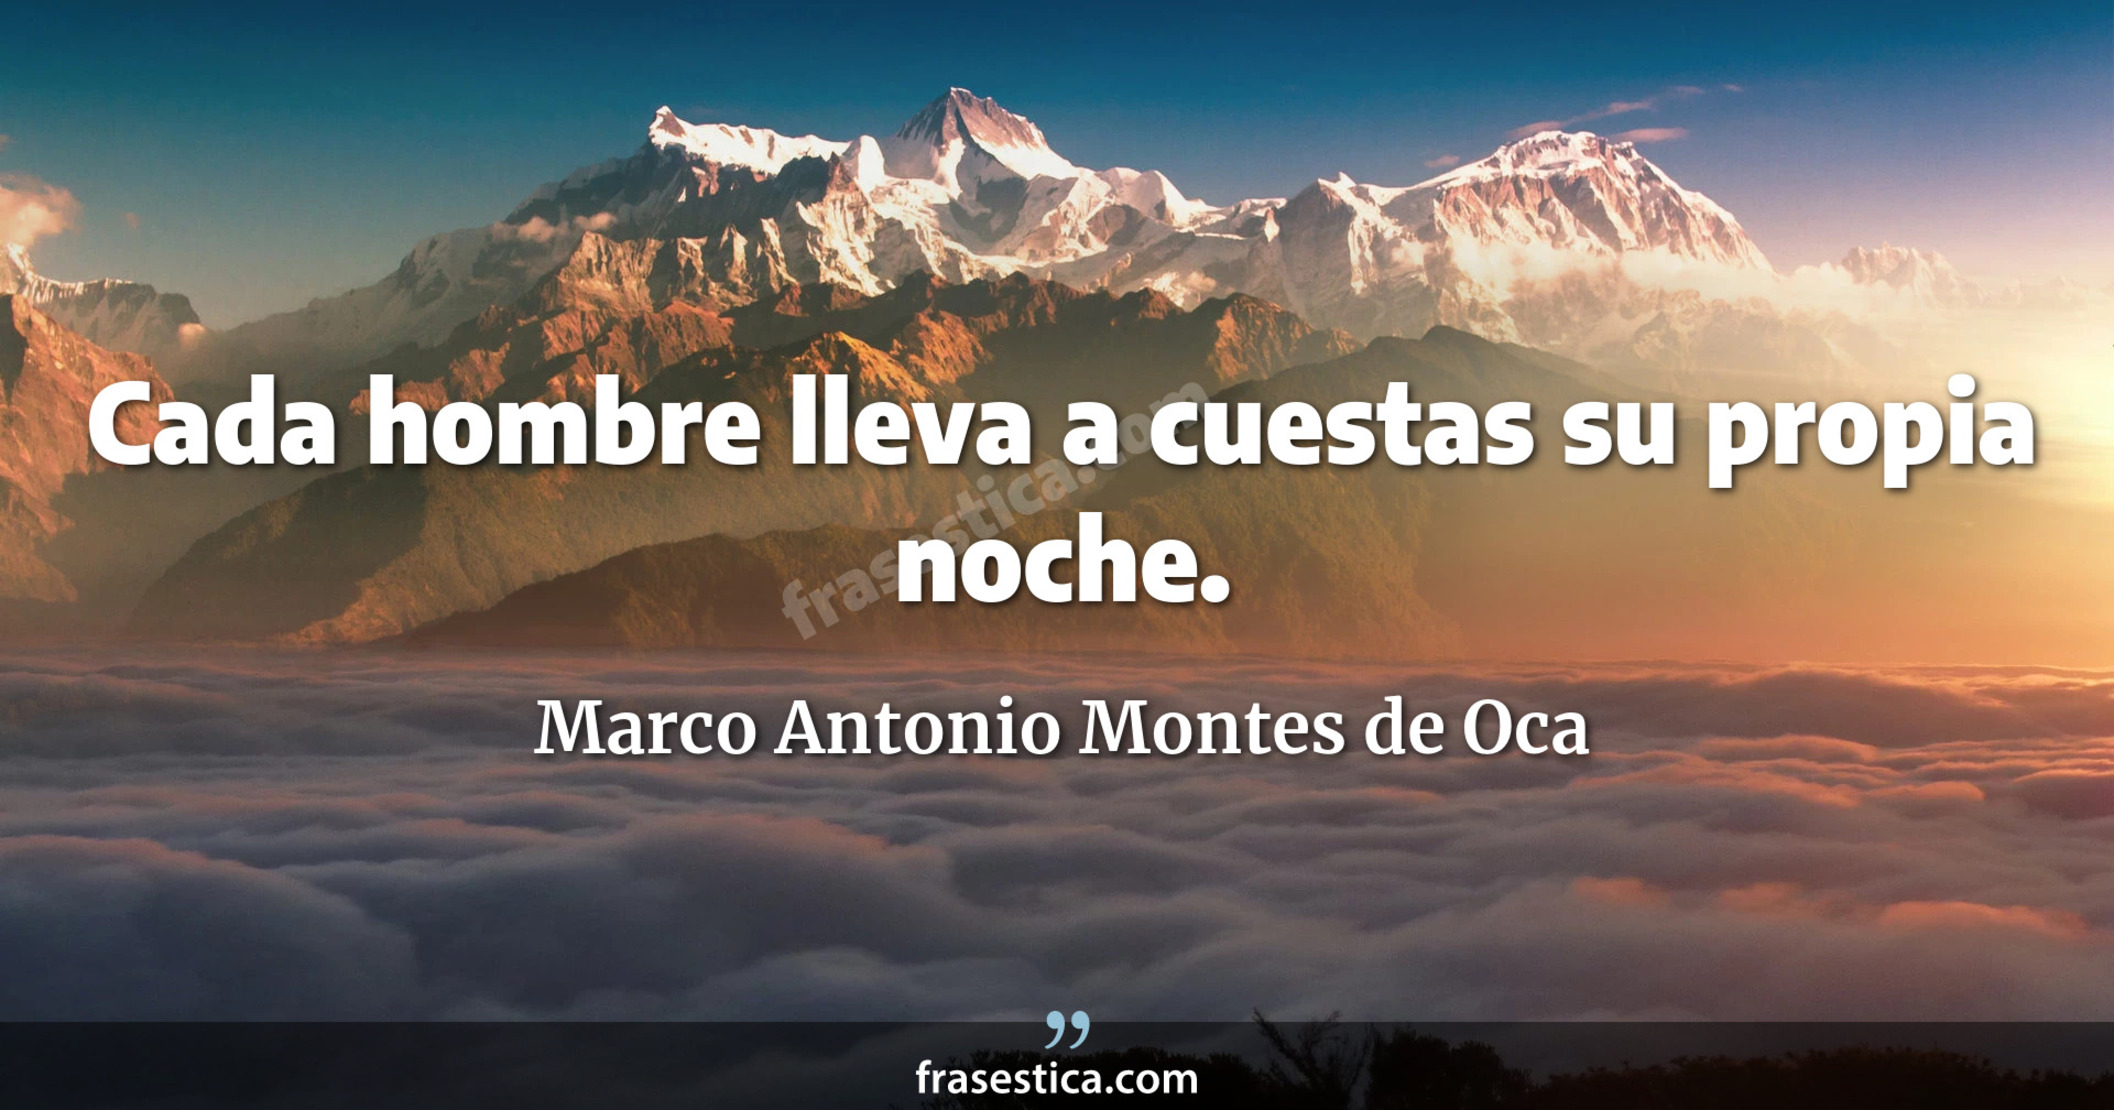 Cada hombre lleva a cuestas su propia noche. - Marco Antonio Montes de Oca